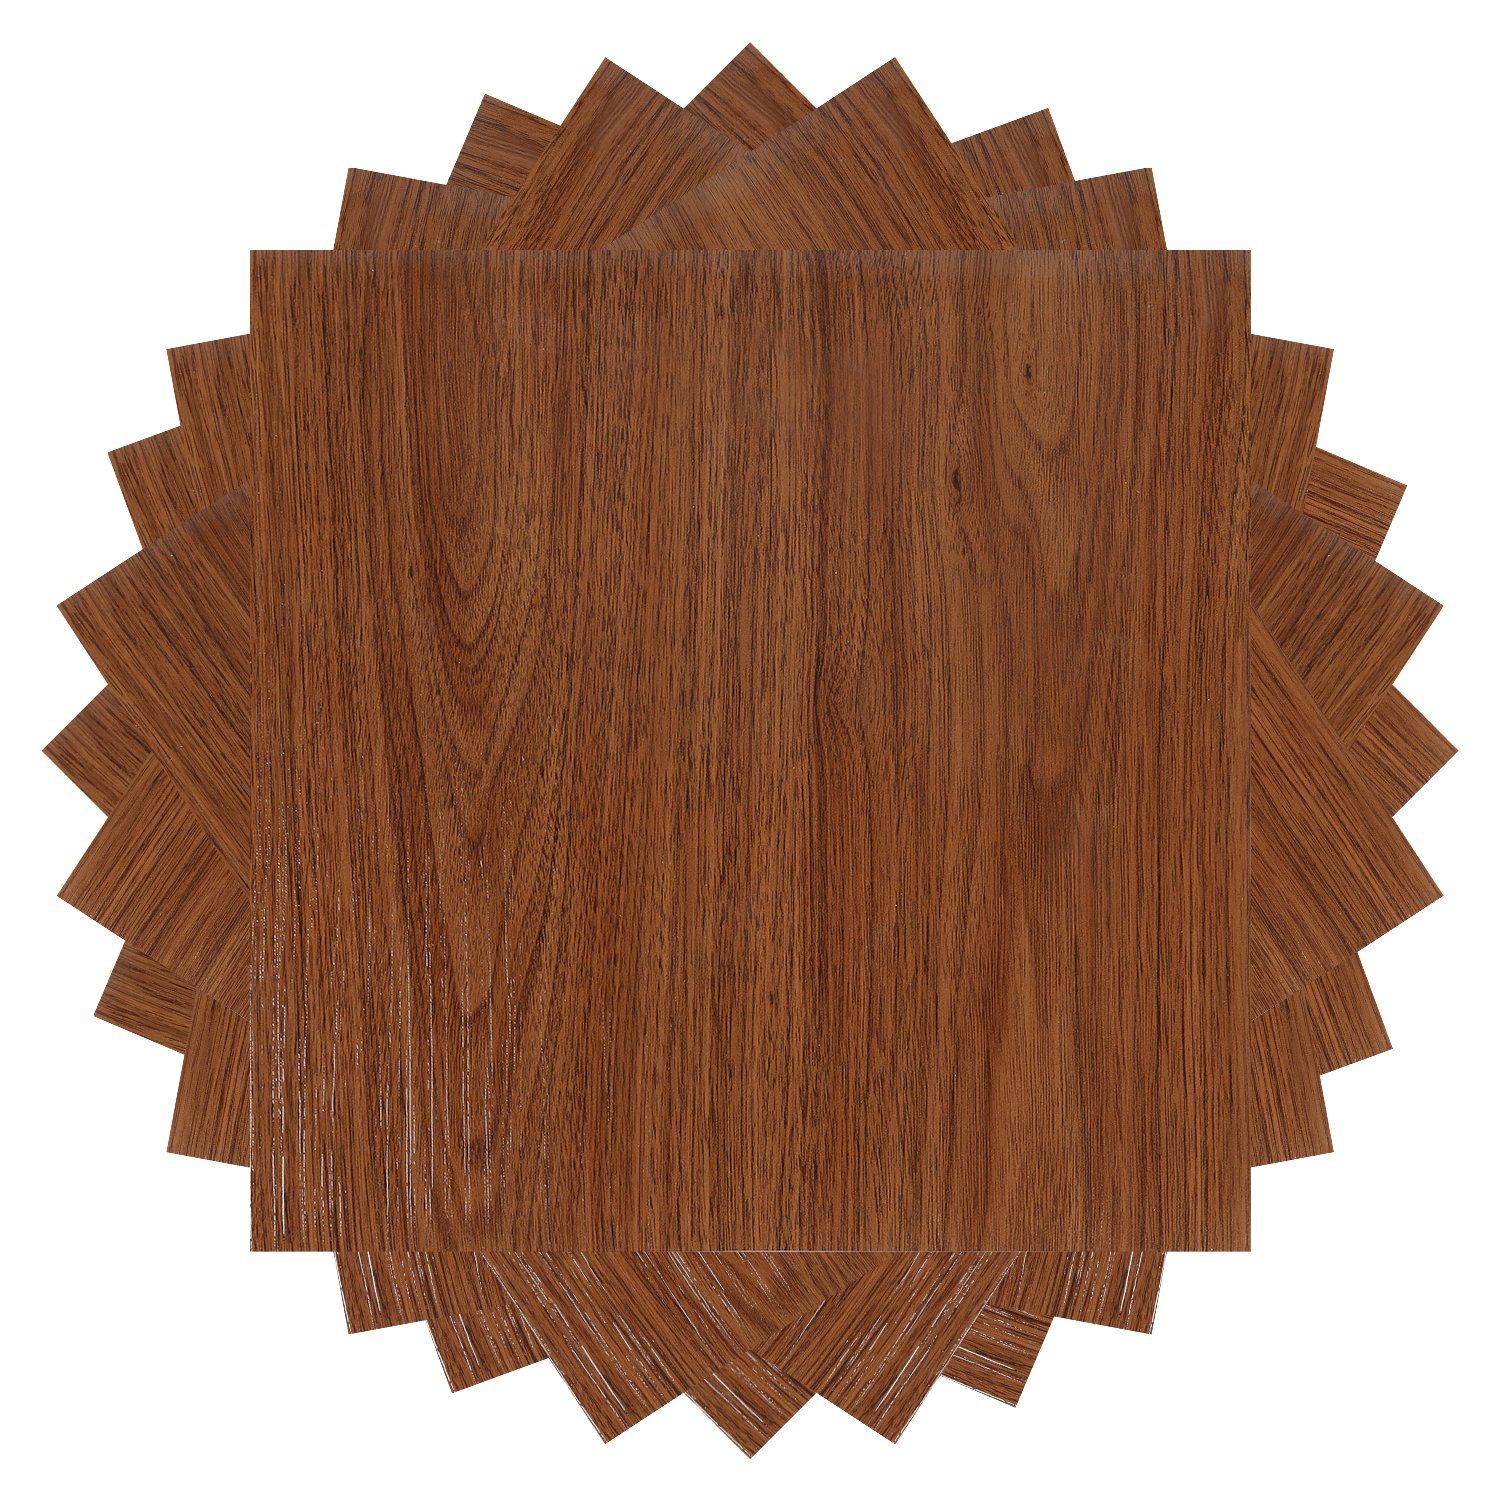 TolleTour Vinylboden Vinylboden,PVC Bodenbelag,Selbstklebende Fliesen,ca.1m²/11 Fliesen, Fußbodenheizung geeignet,schallhemmend | Vinylboden